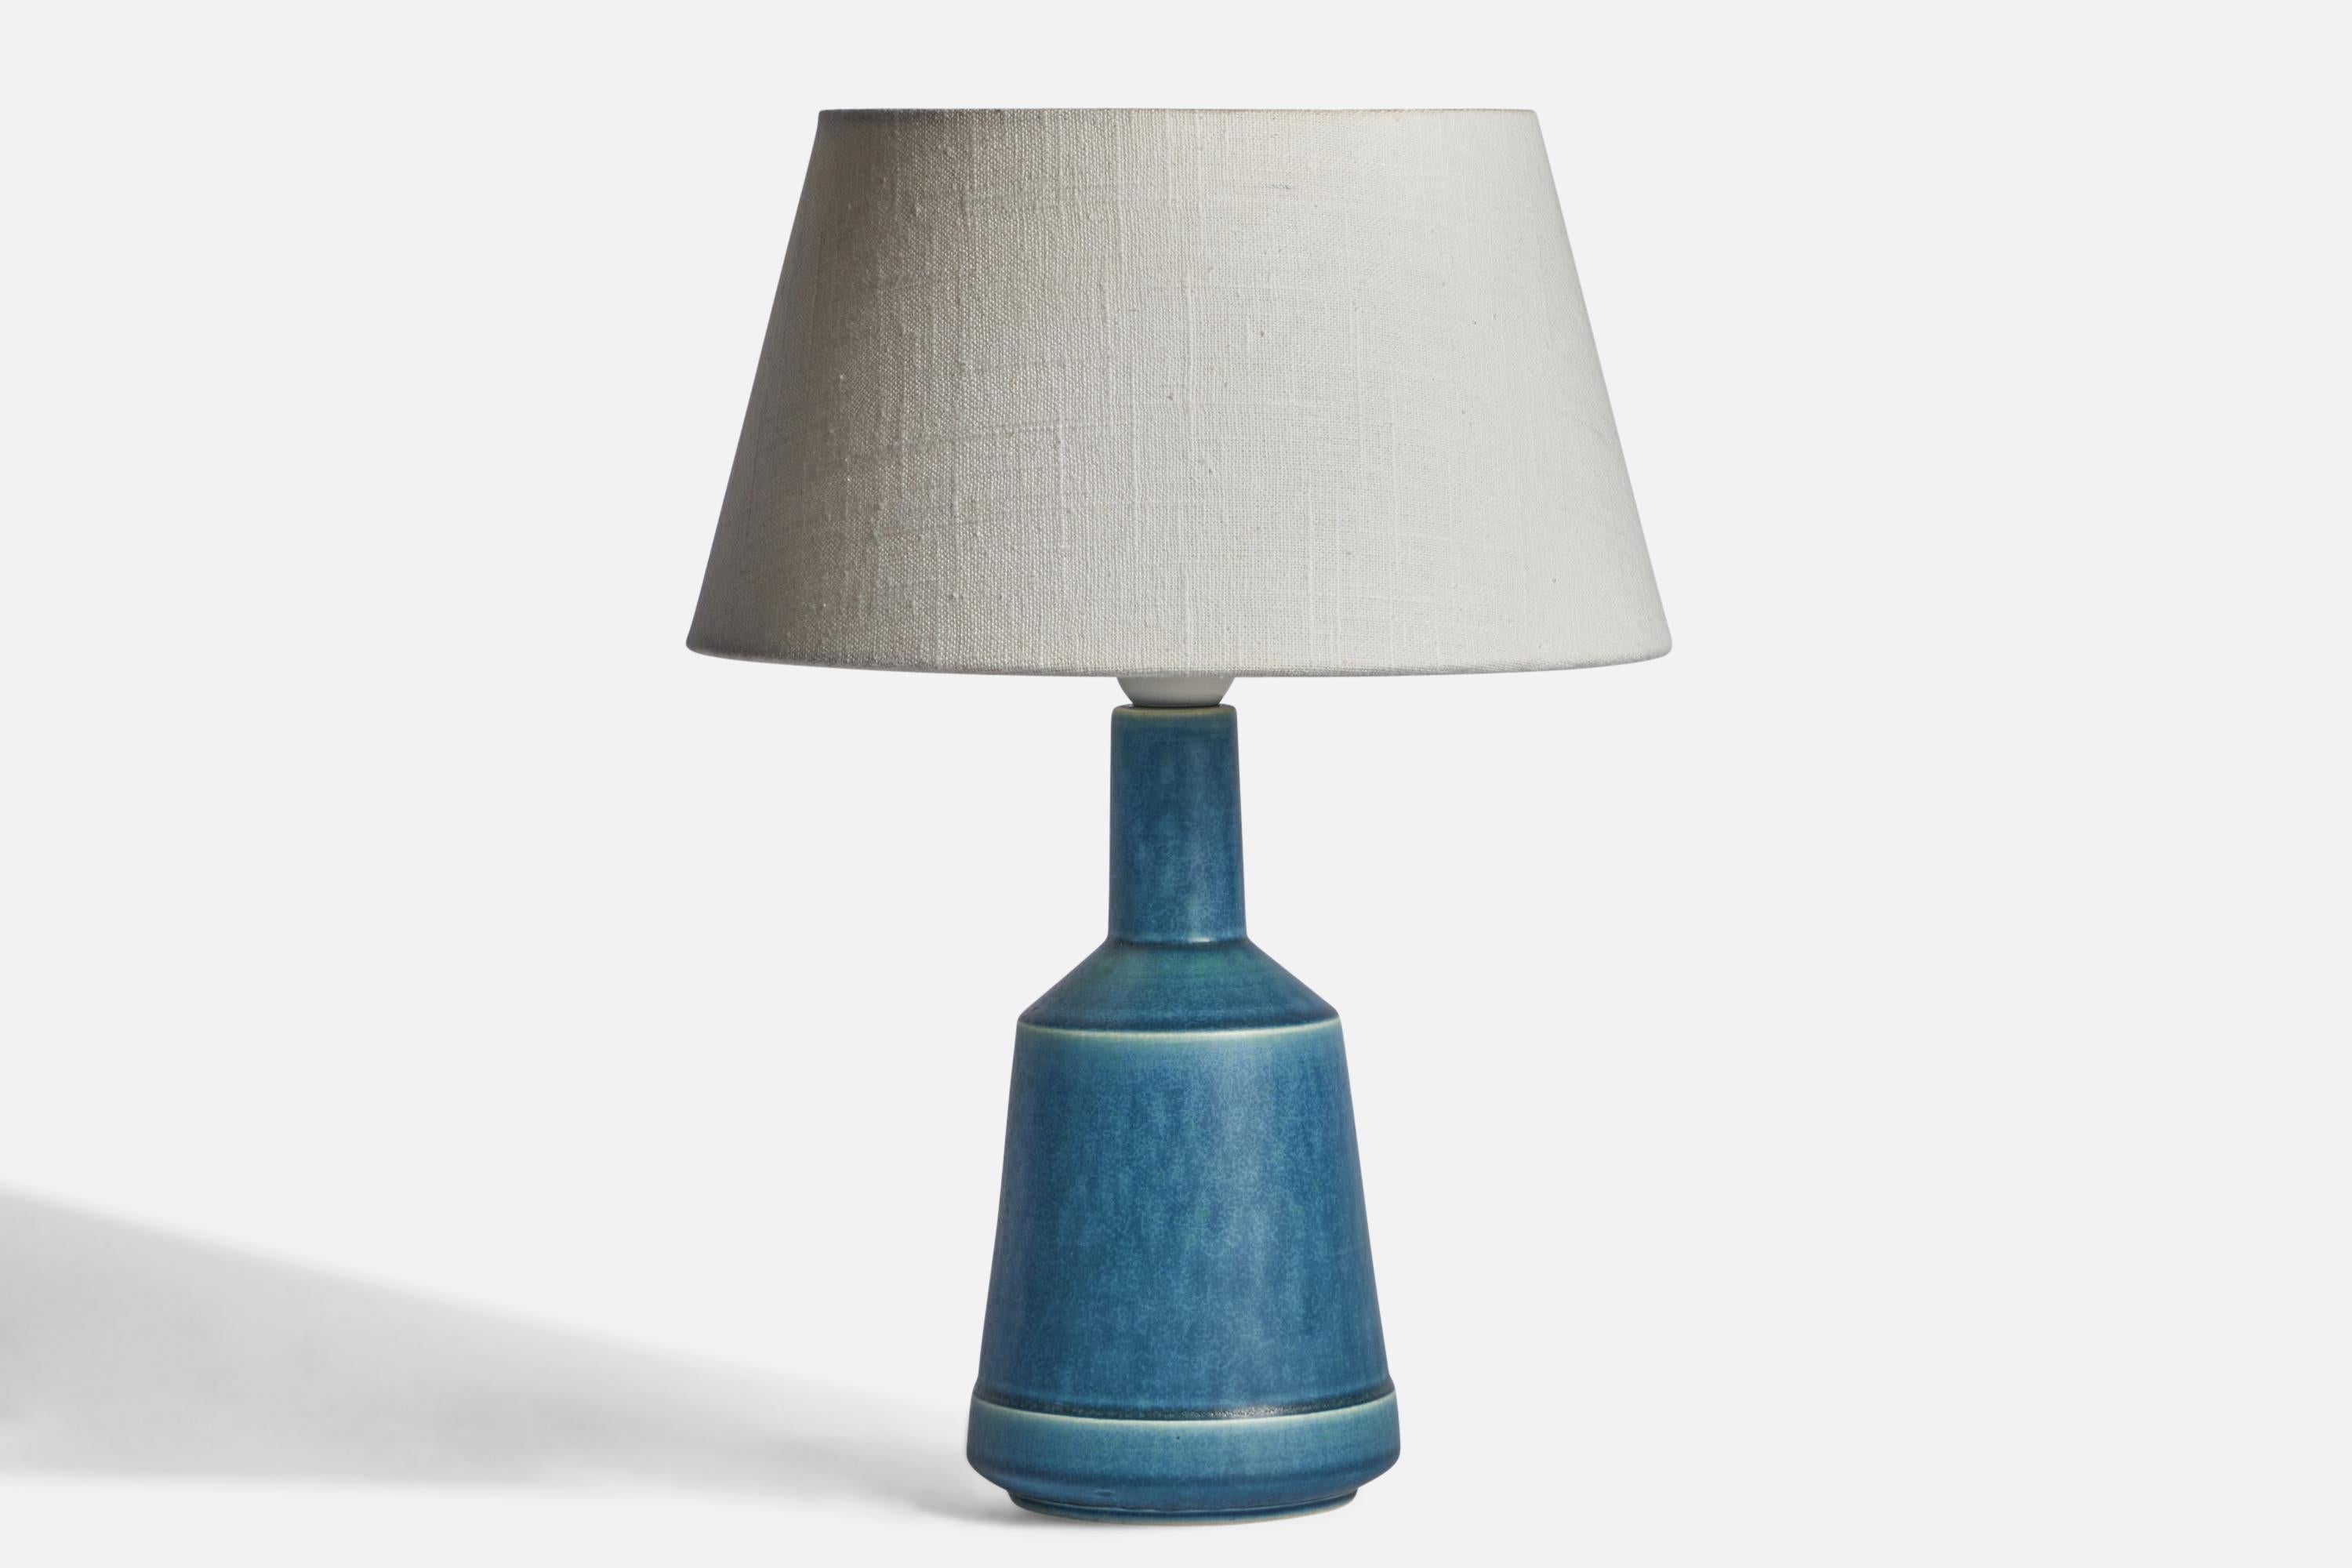 Tischlampe aus blau glasiertem Steingut, entworfen und hergestellt von Desiree, Dänemark, 1960er Jahre.

Abmessungen der Lampe (Zoll): 11,3